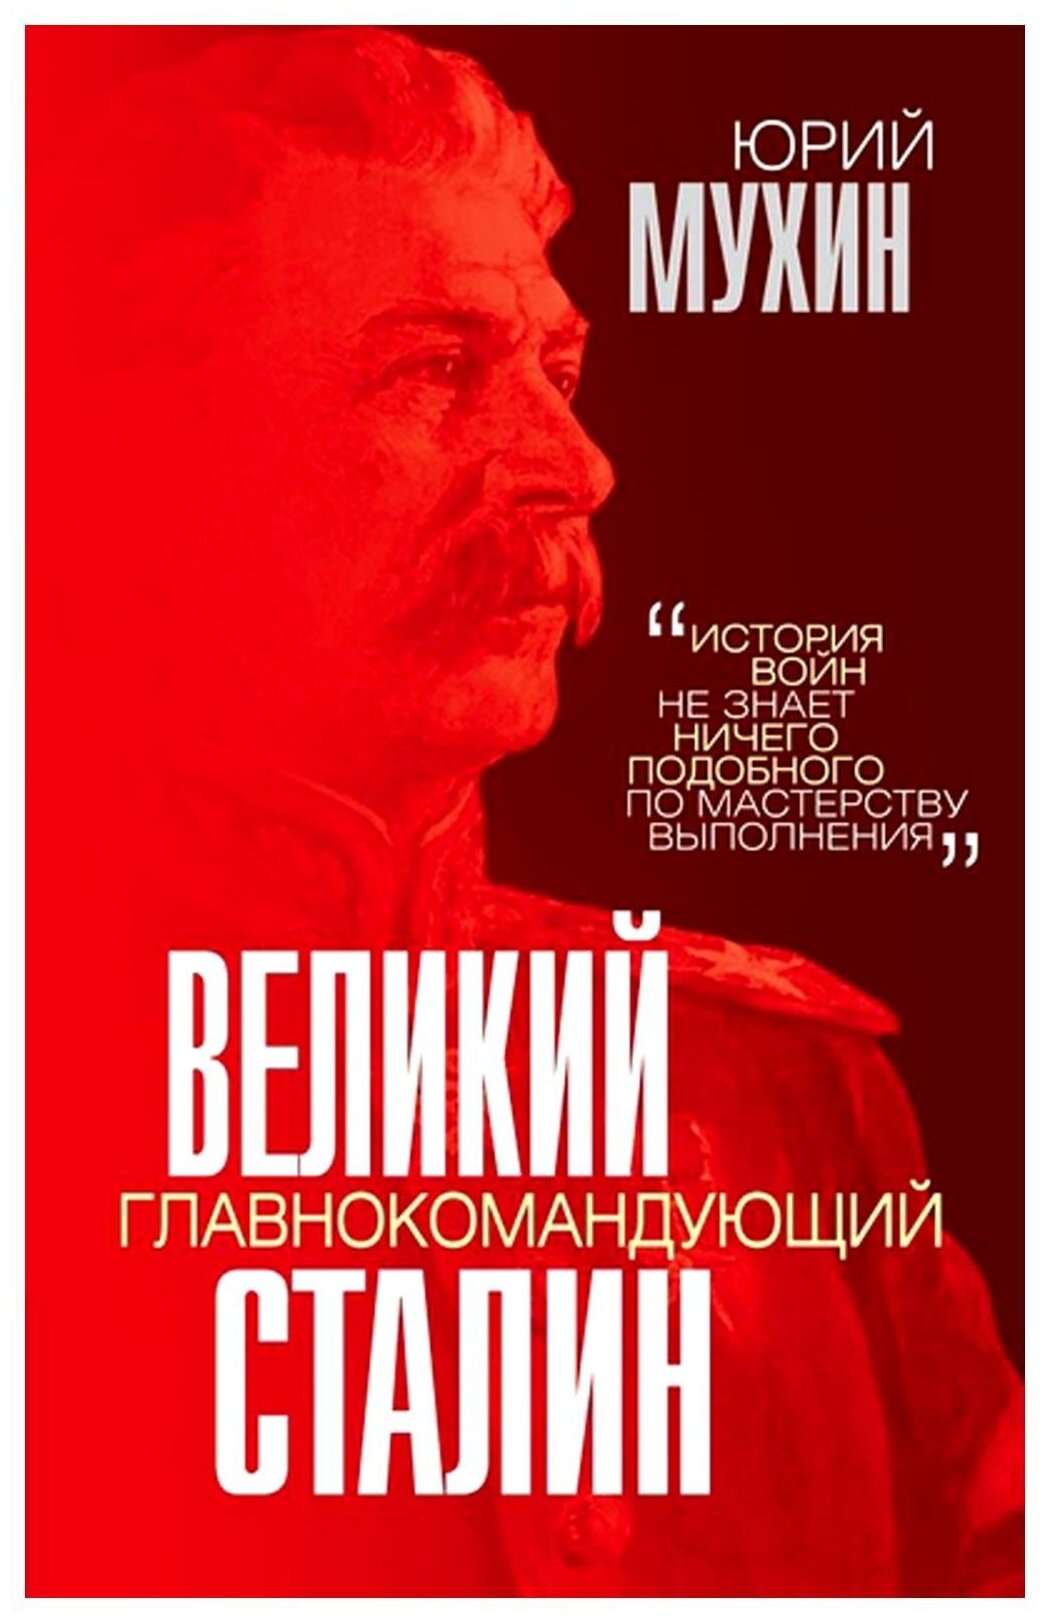 Великий главнокомандующий И.В. Сталин - фото №1